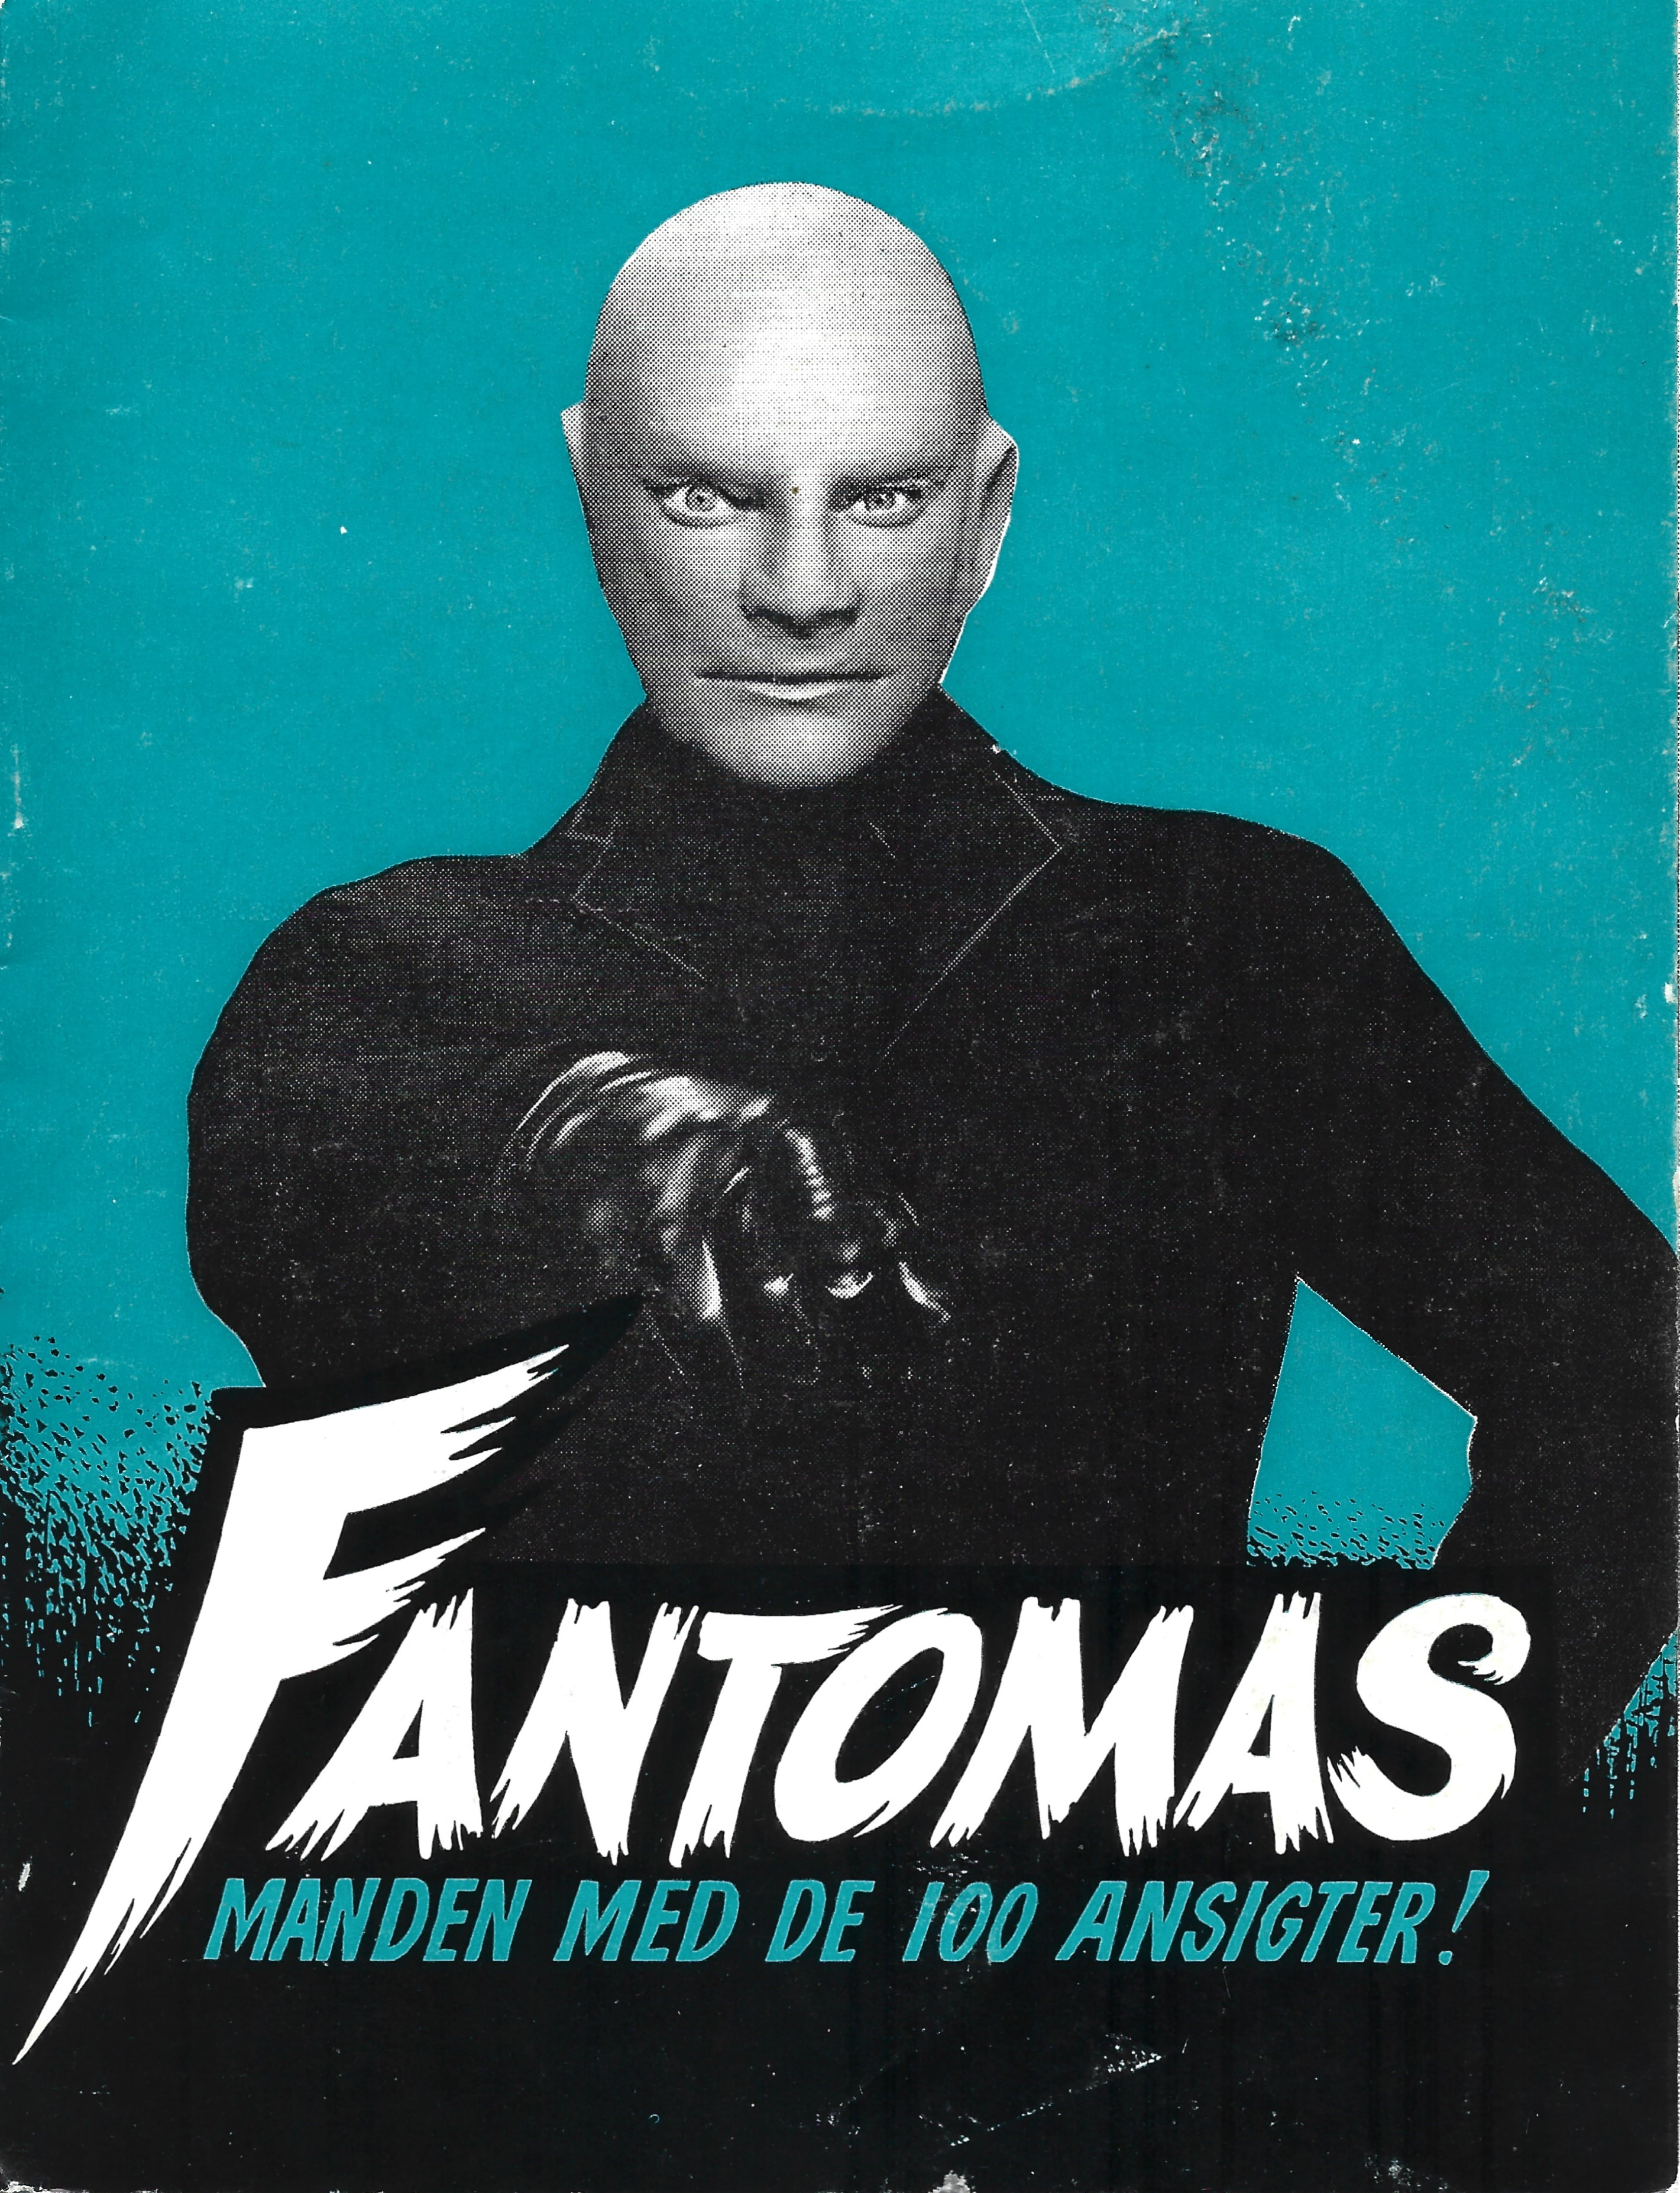 Fantomas, Manden med de 100 ansigter !